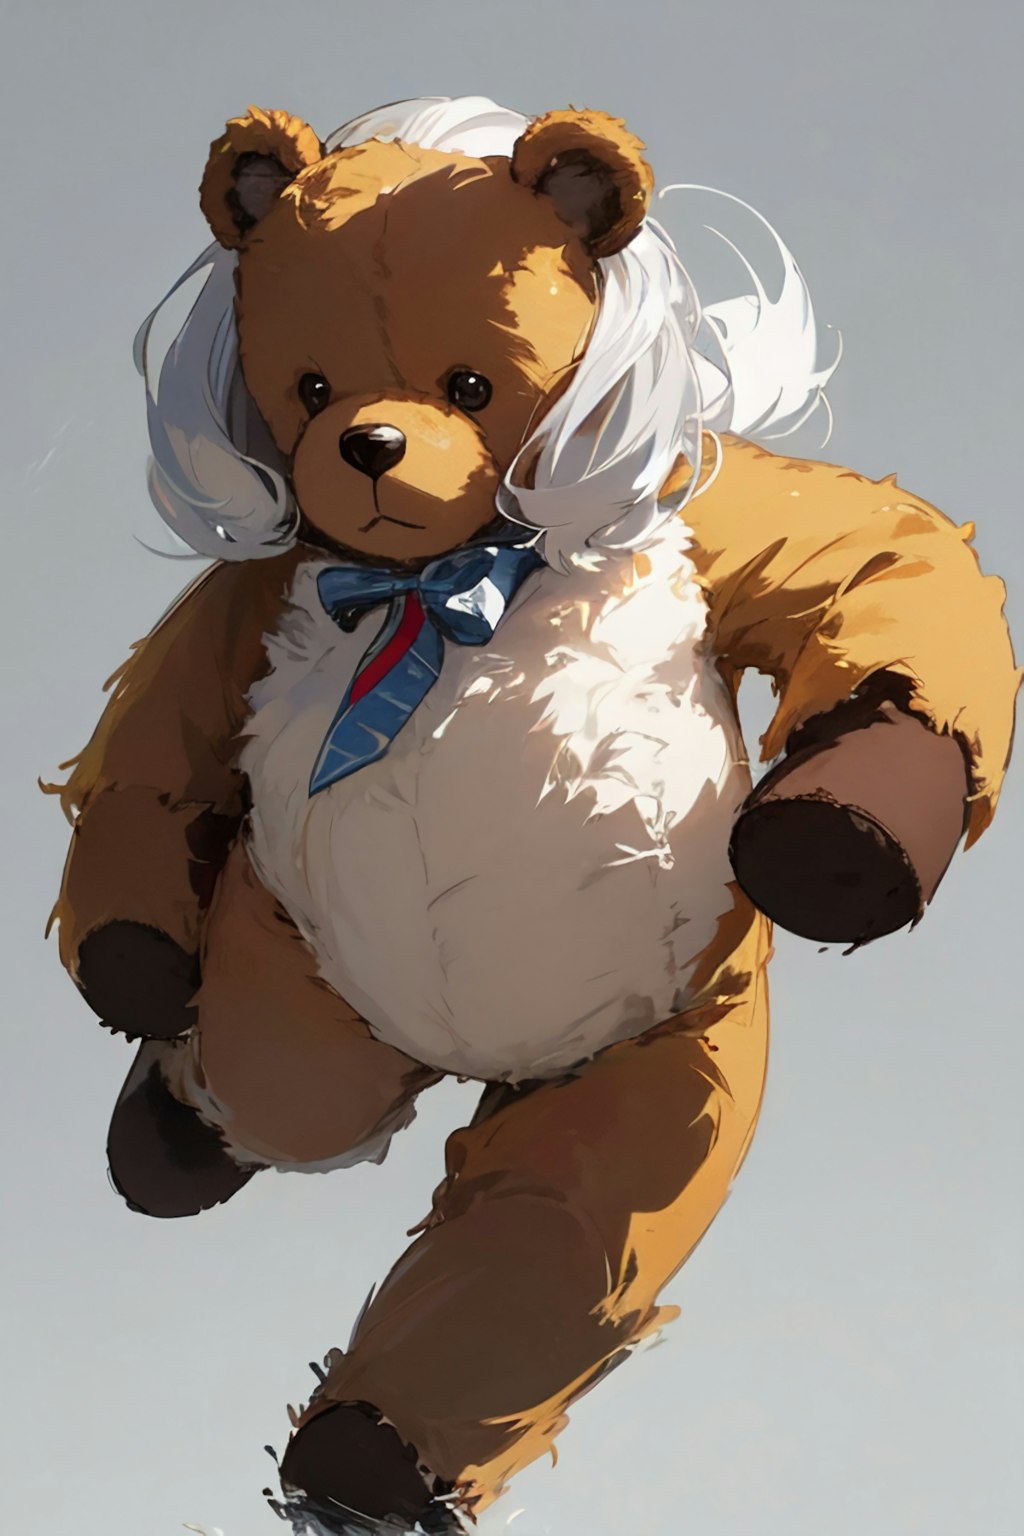 Silver-haired (teddy) bear